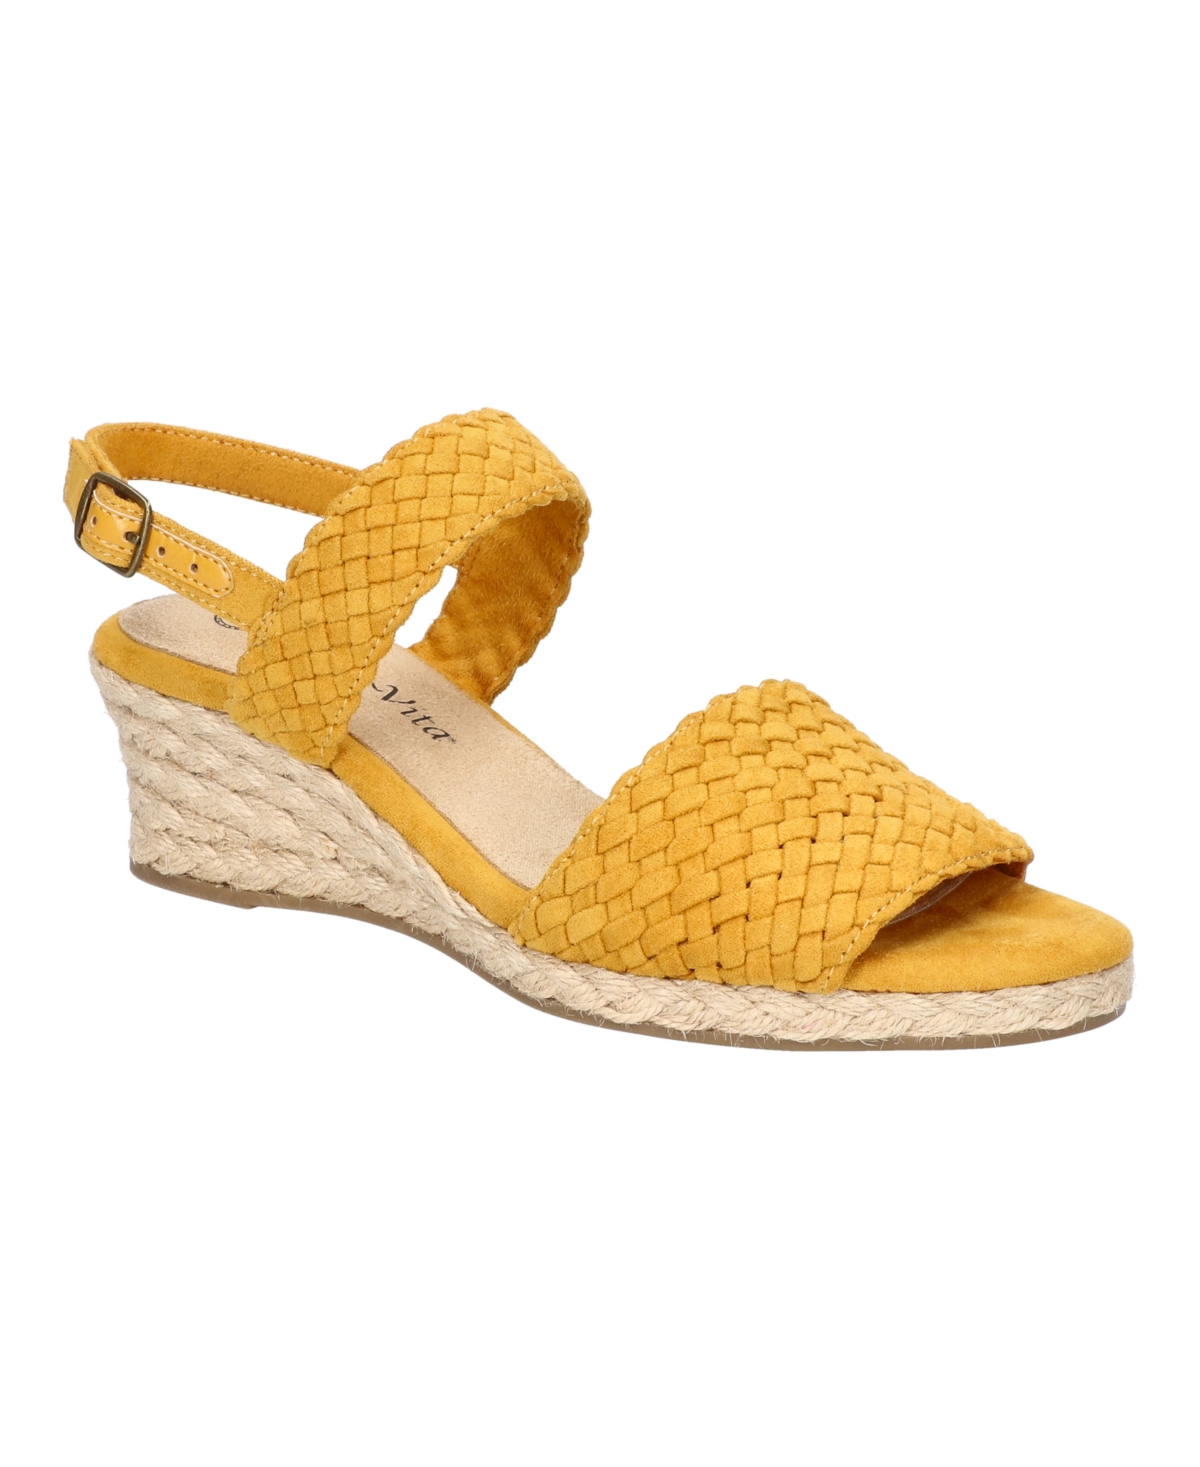 Shop Bella Vita Women's Mariella Espadrille Wedge Sandals In Mustard Suede